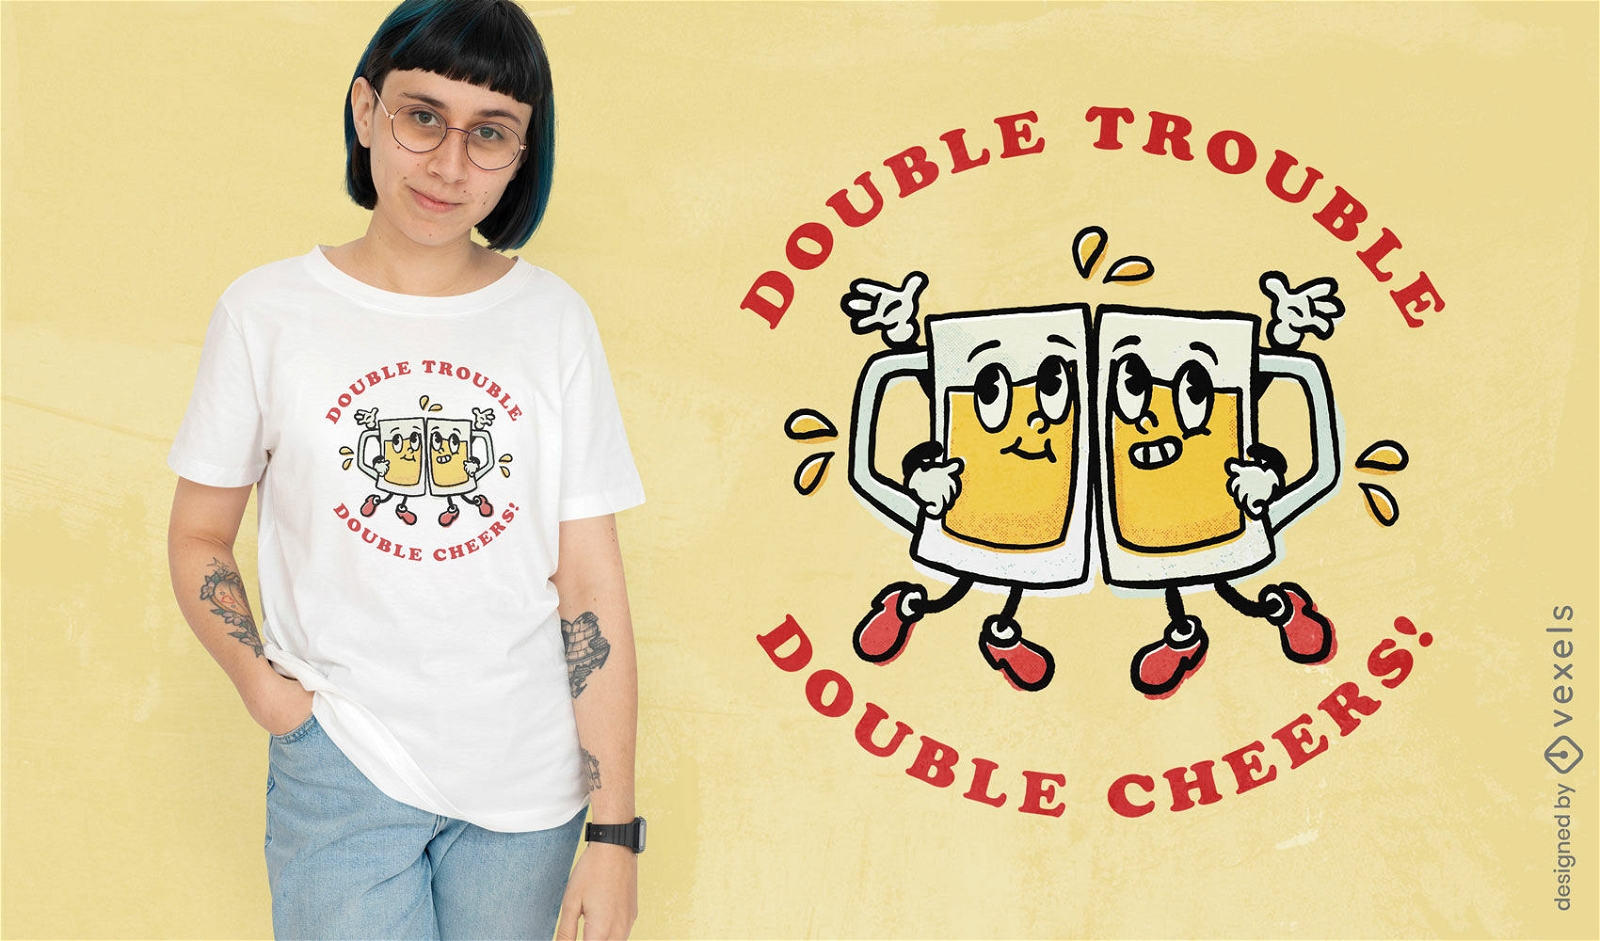 Double cheers humor t-shirt design